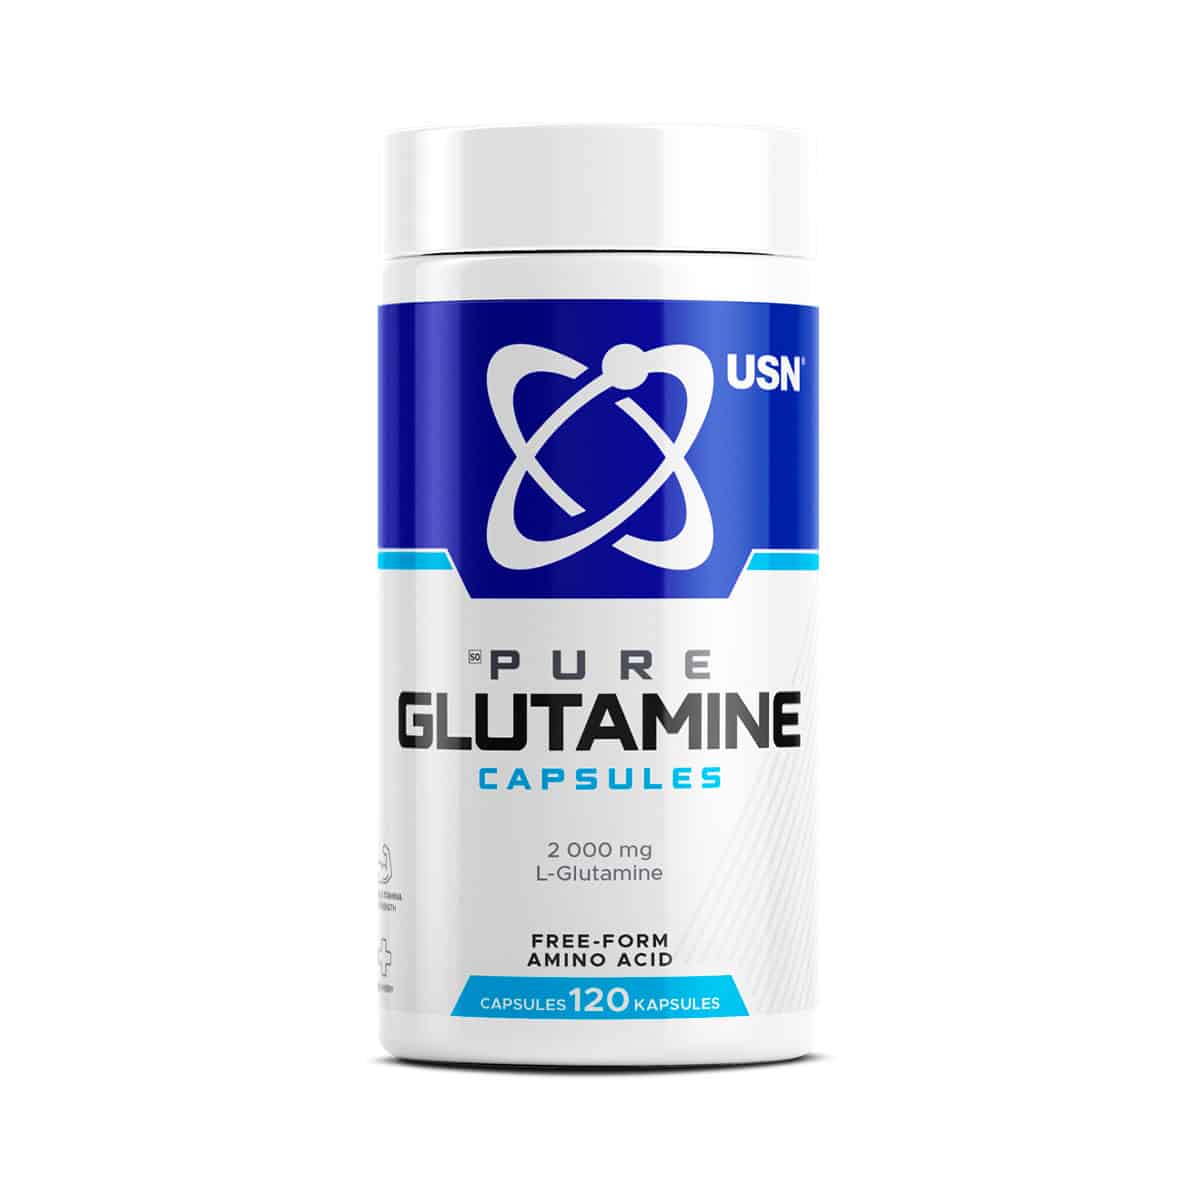 USN Pure Glutamine Capsules 2000mg - 120 Caps